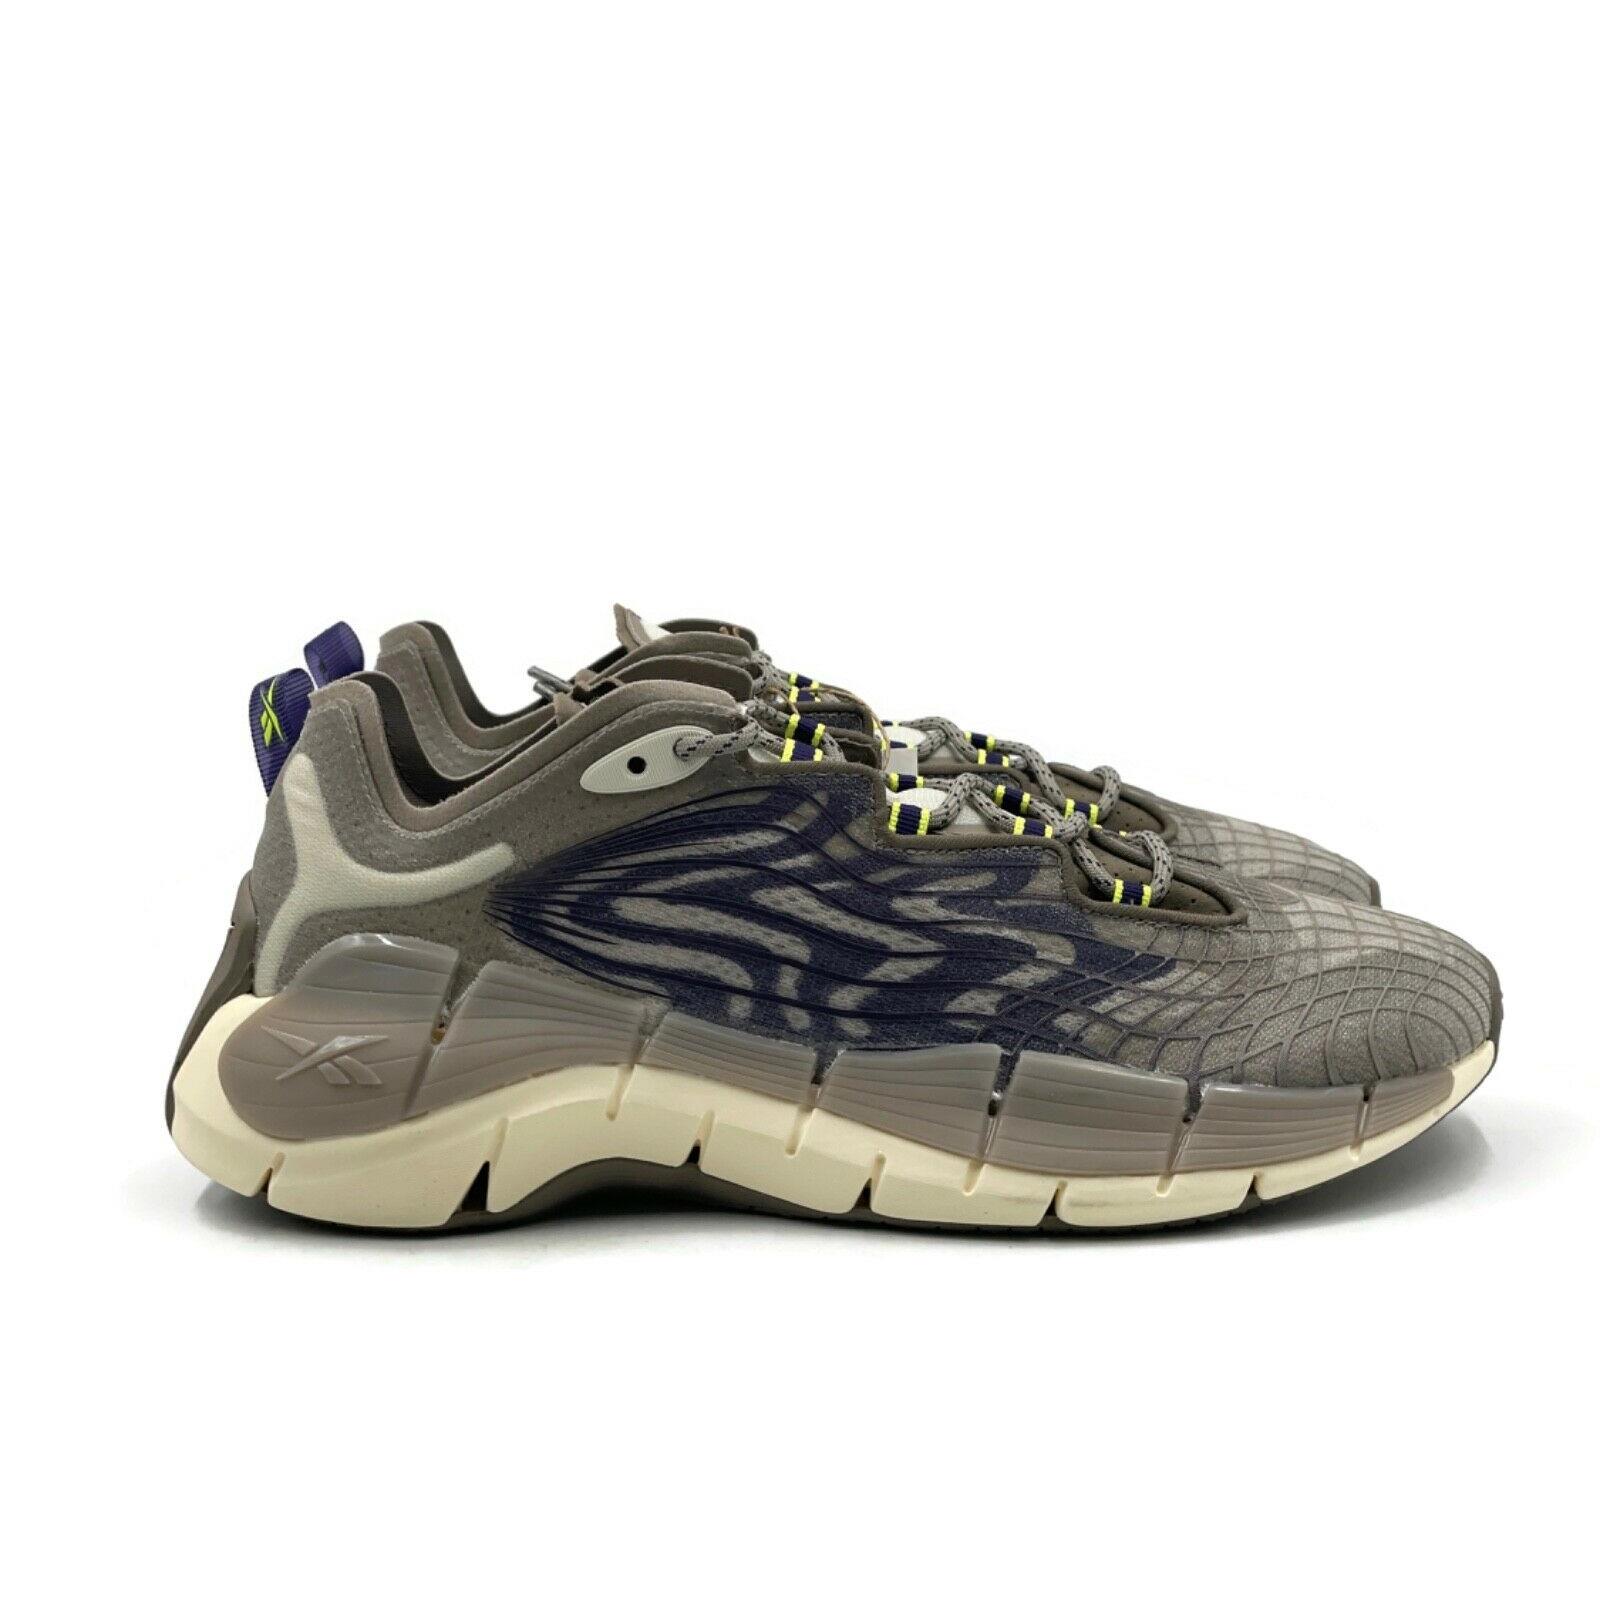 Reebok Zig Kinetica II 2 Mens Size 9 Casual Running Shoe Gray Trainer Sneaker - Gray Purple Green